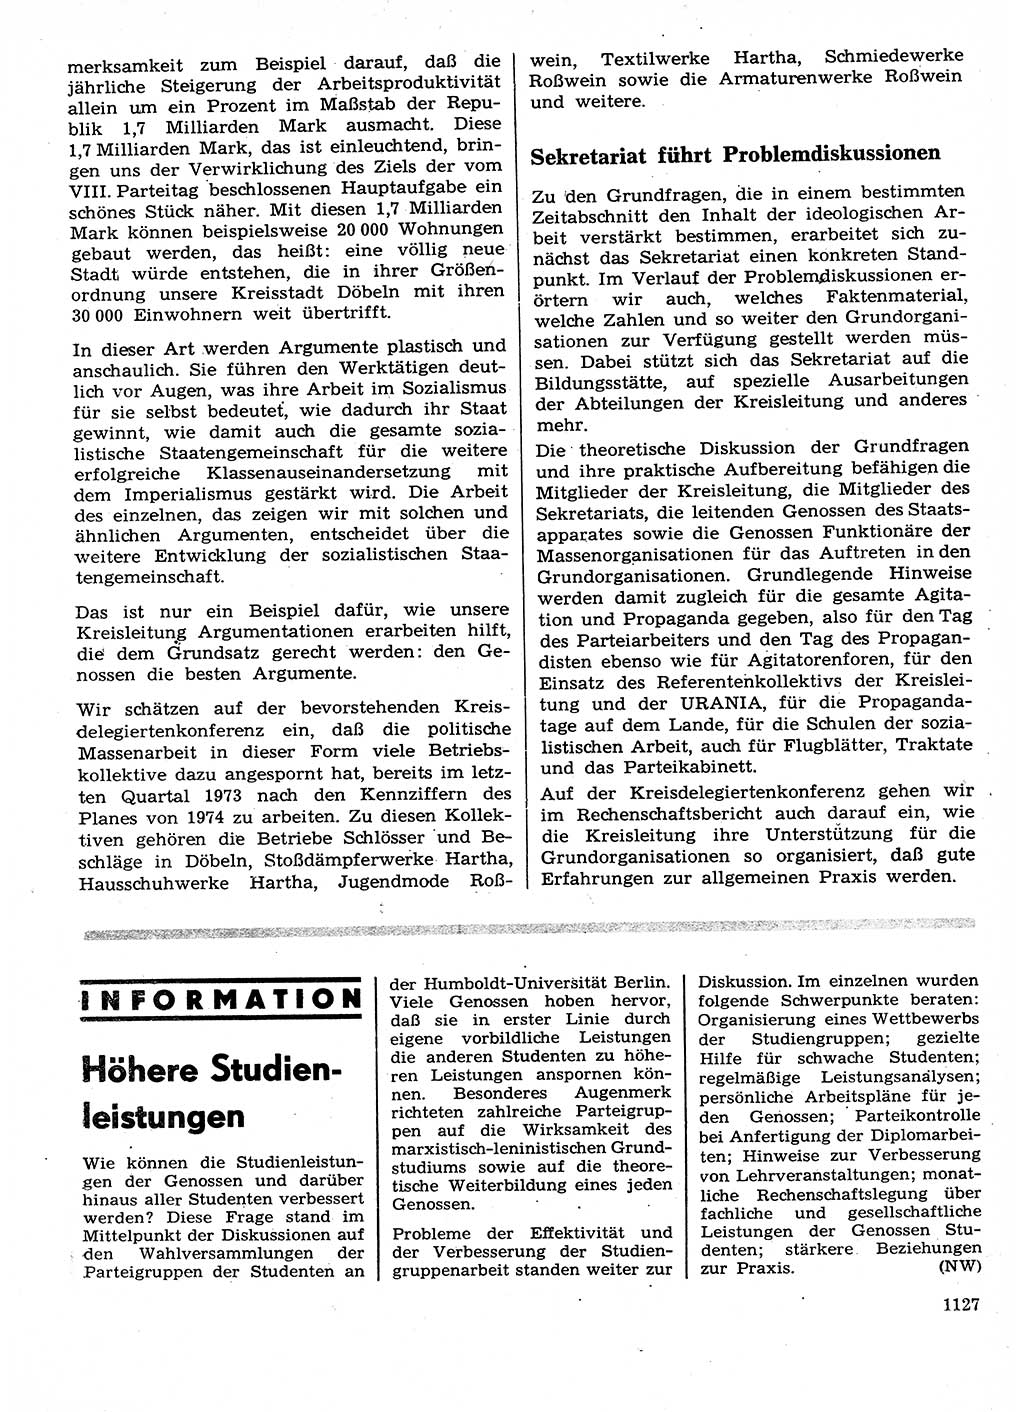 Neuer Weg (NW), Organ des Zentralkomitees (ZK) der SED (Sozialistische Einheitspartei Deutschlands) für Fragen des Parteilebens, 28. Jahrgang [Deutsche Demokratische Republik (DDR)] 1973, Seite 1127 (NW ZK SED DDR 1973, S. 1127)